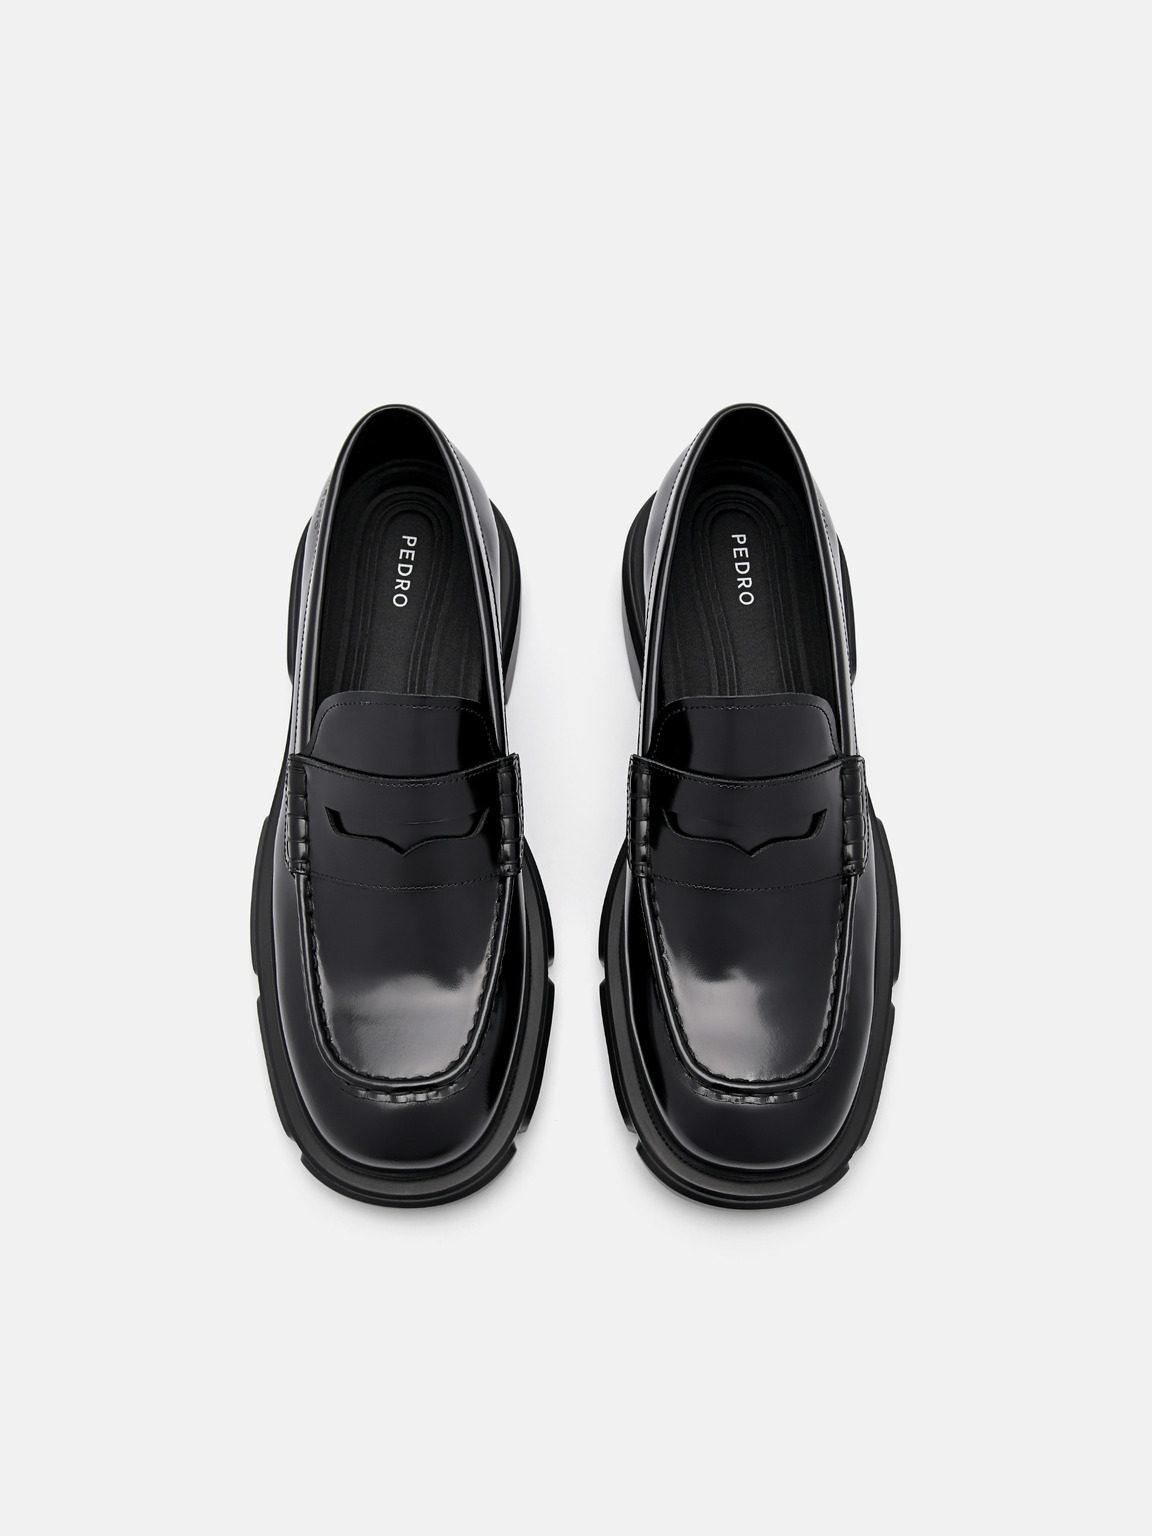 Ellis Leather Loafers, Black